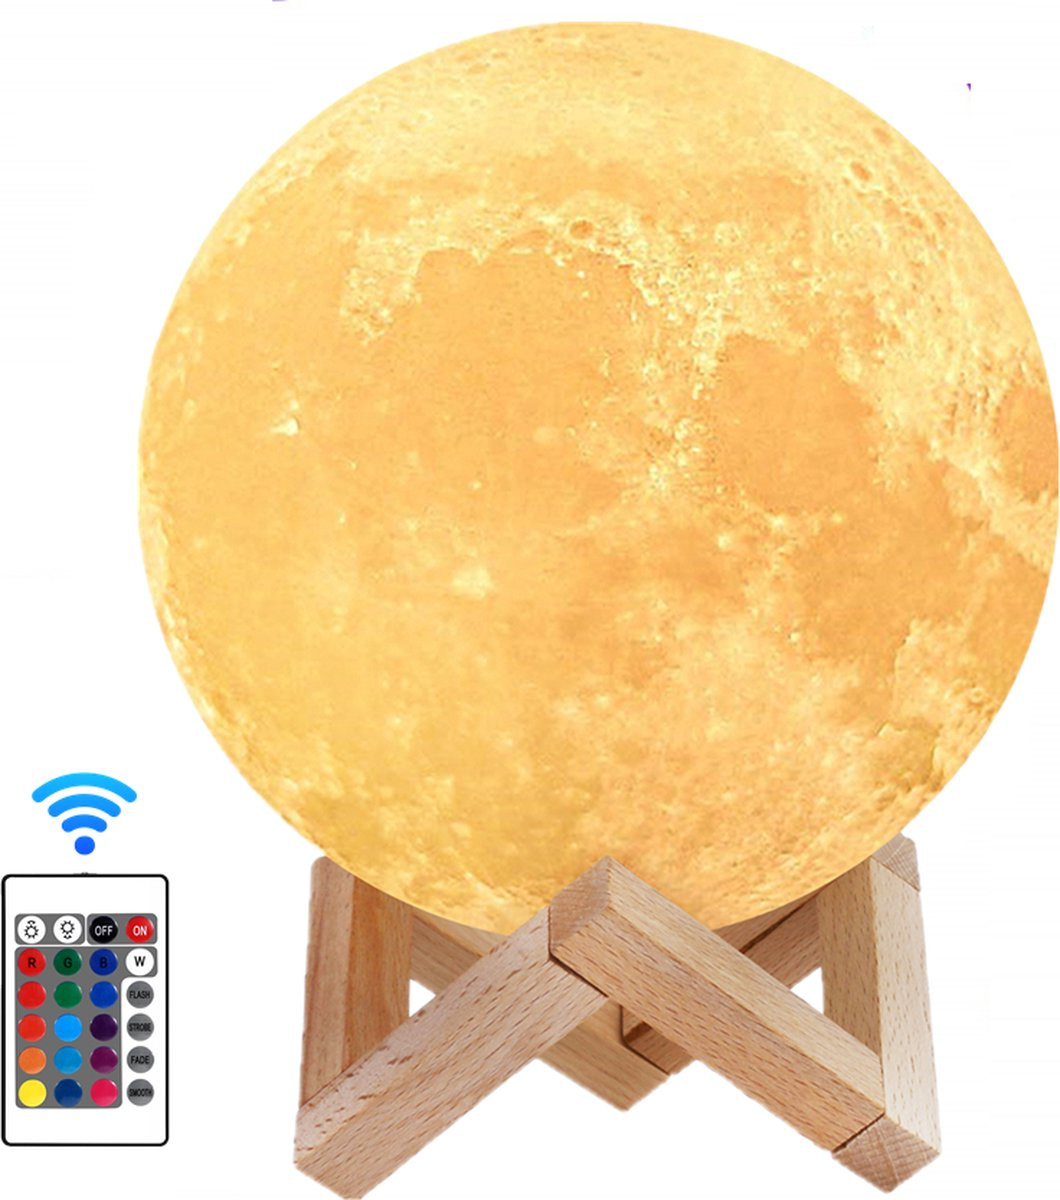 MaanLamp – Maan lamp. Met ingebouwde accu